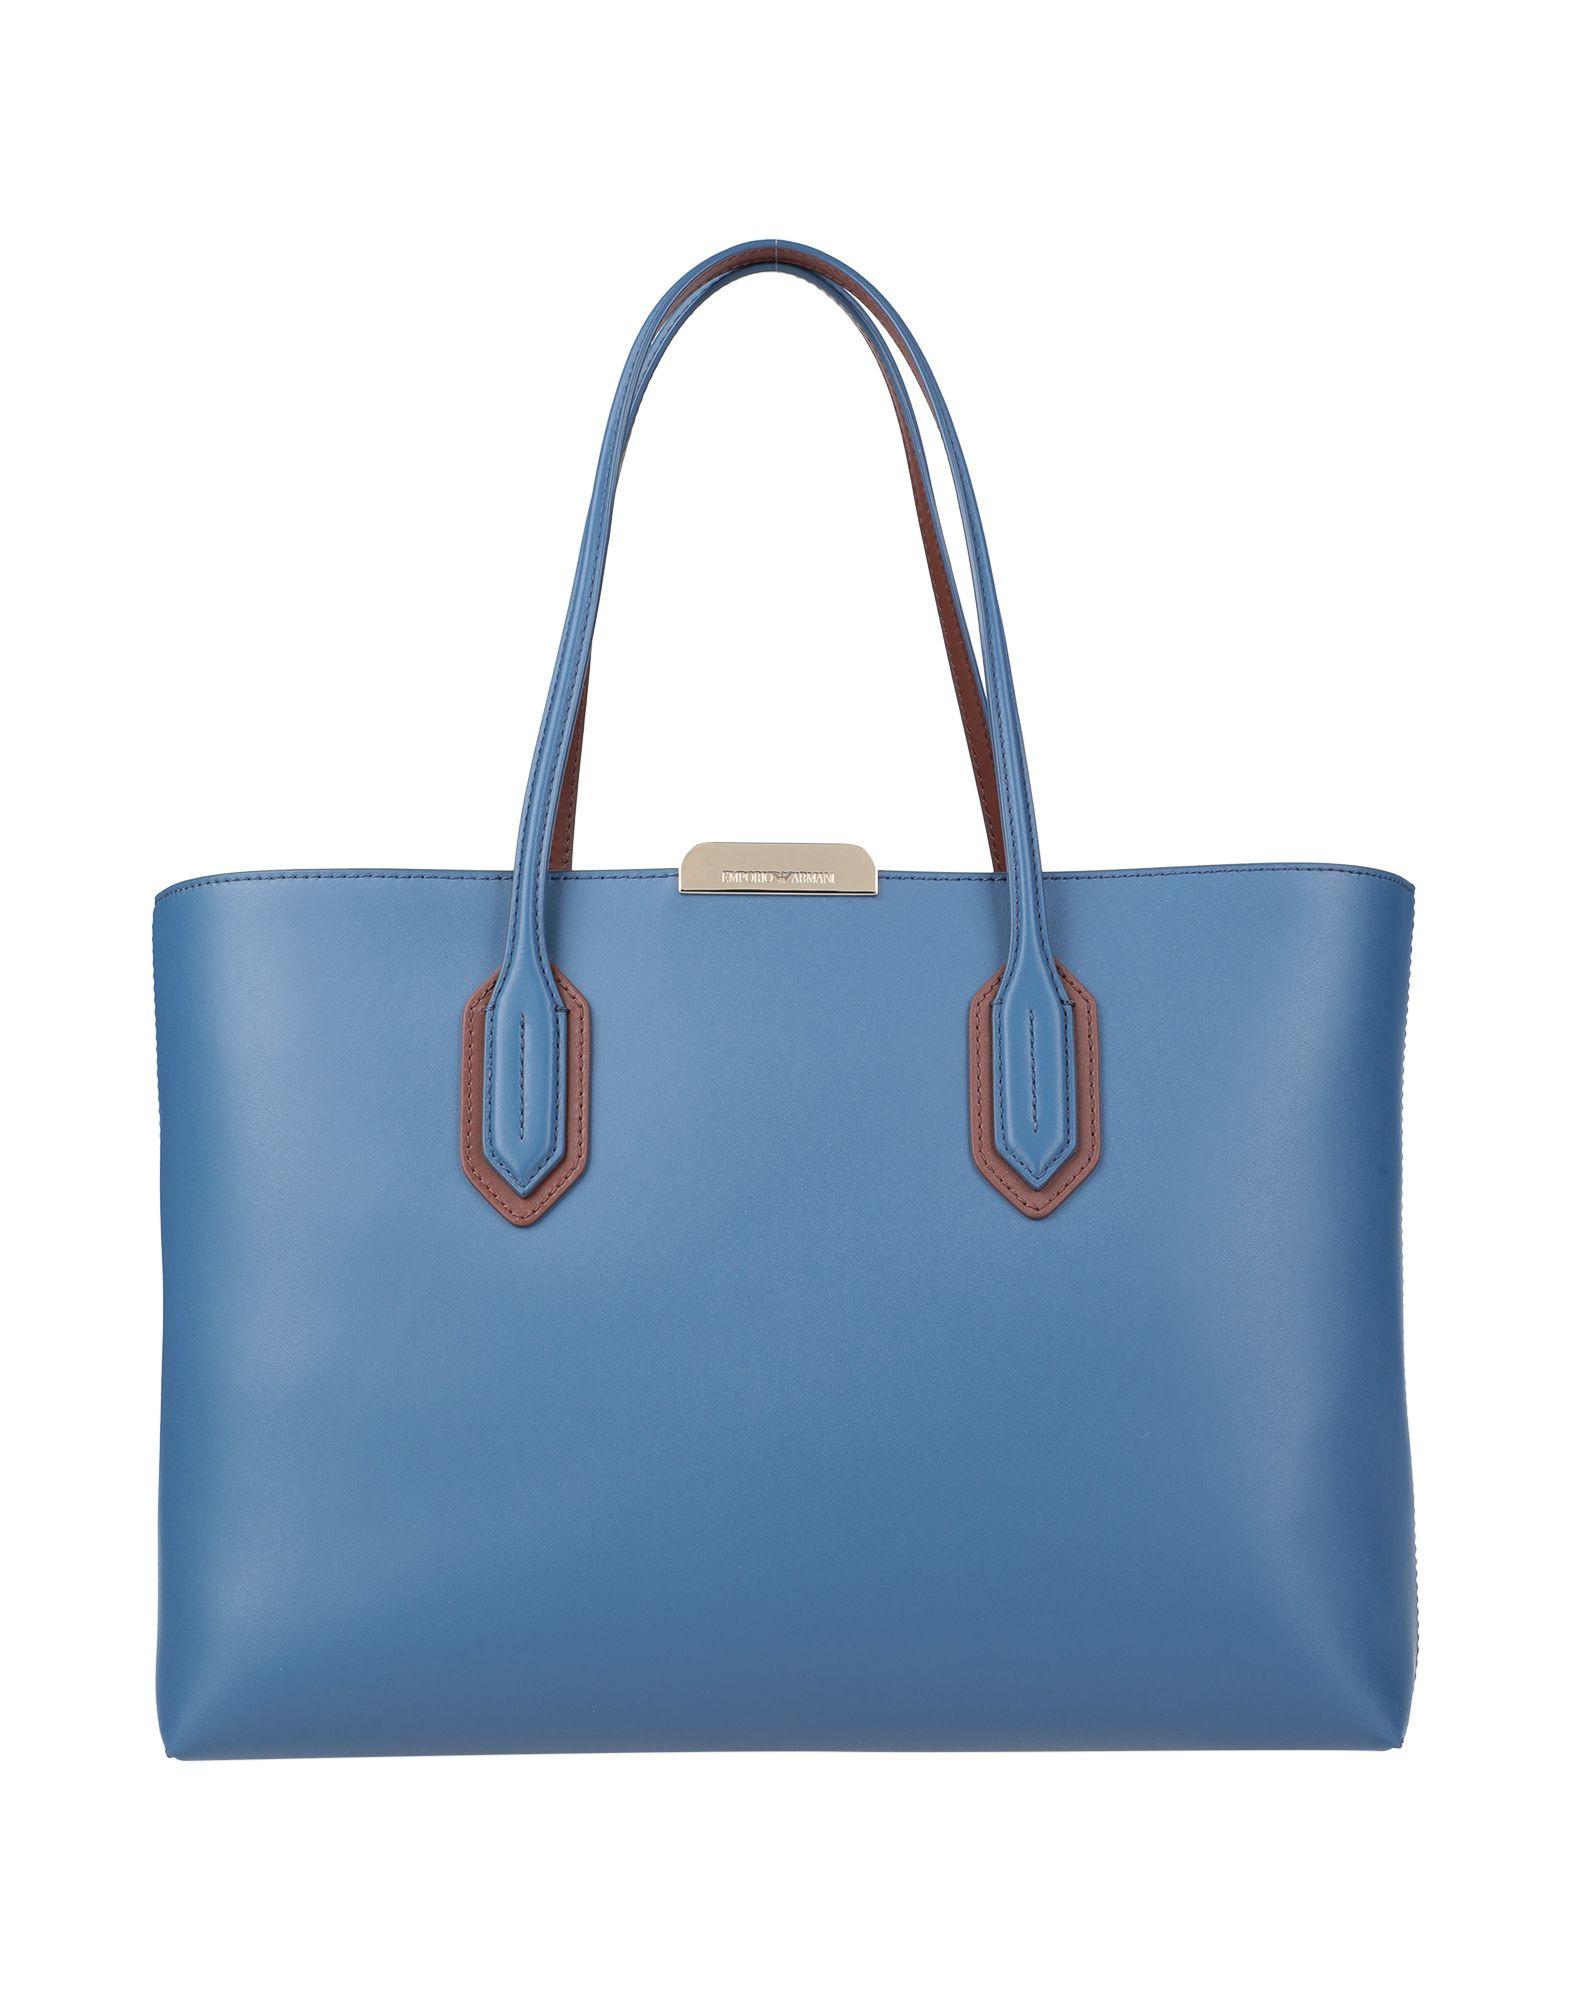 Emporio Armani Handbag in Blue - Lyst